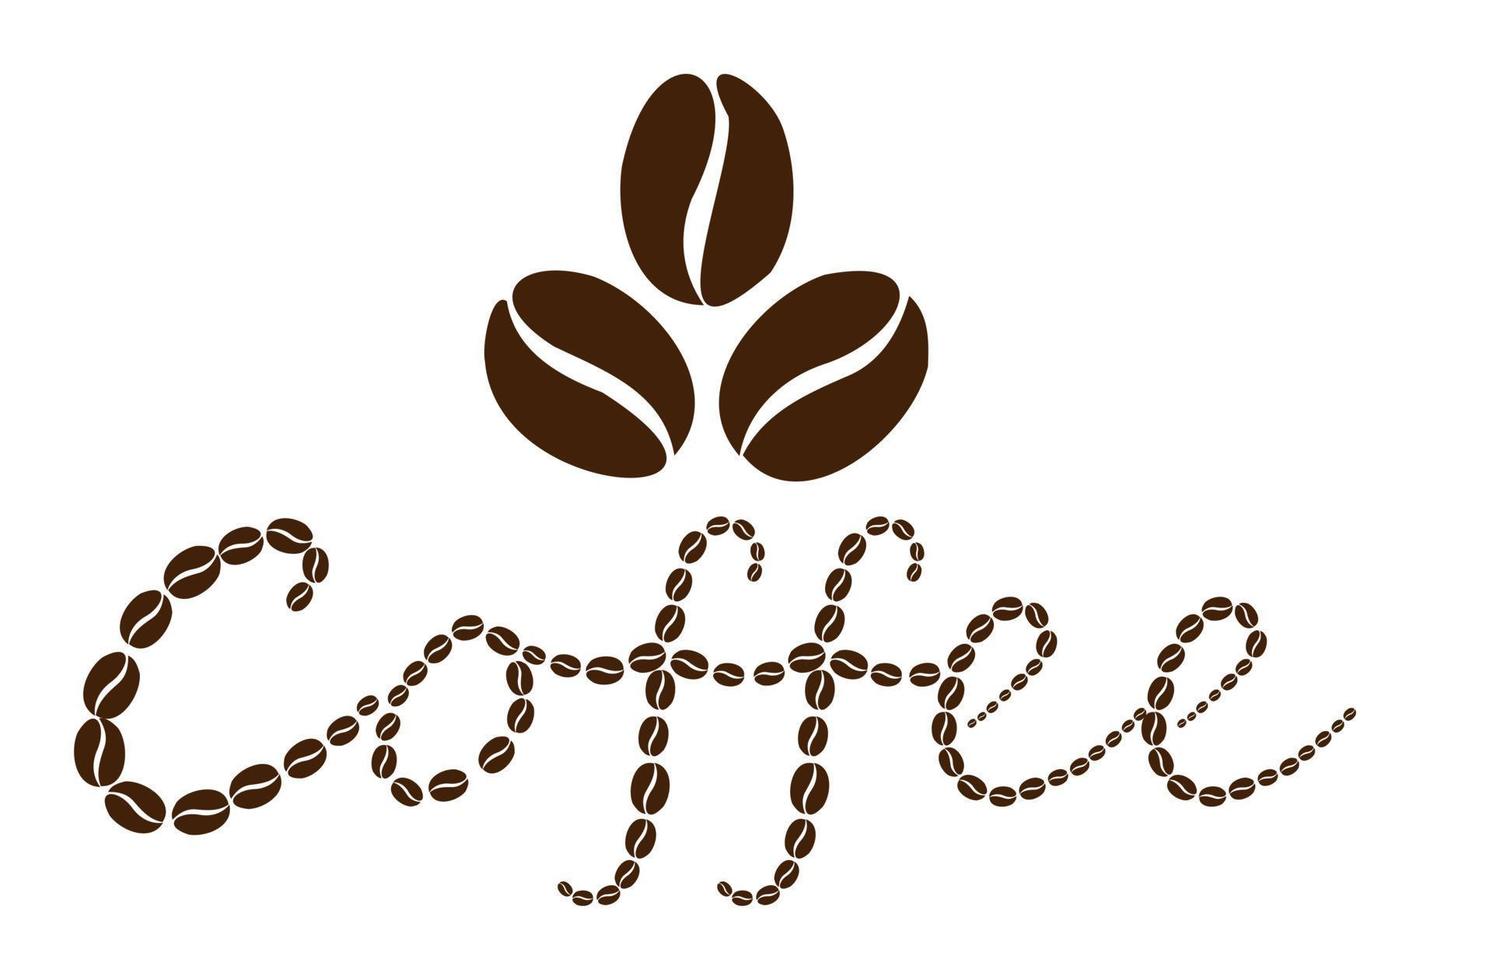 koffie logo gelegd uit van koffie bonen. vector